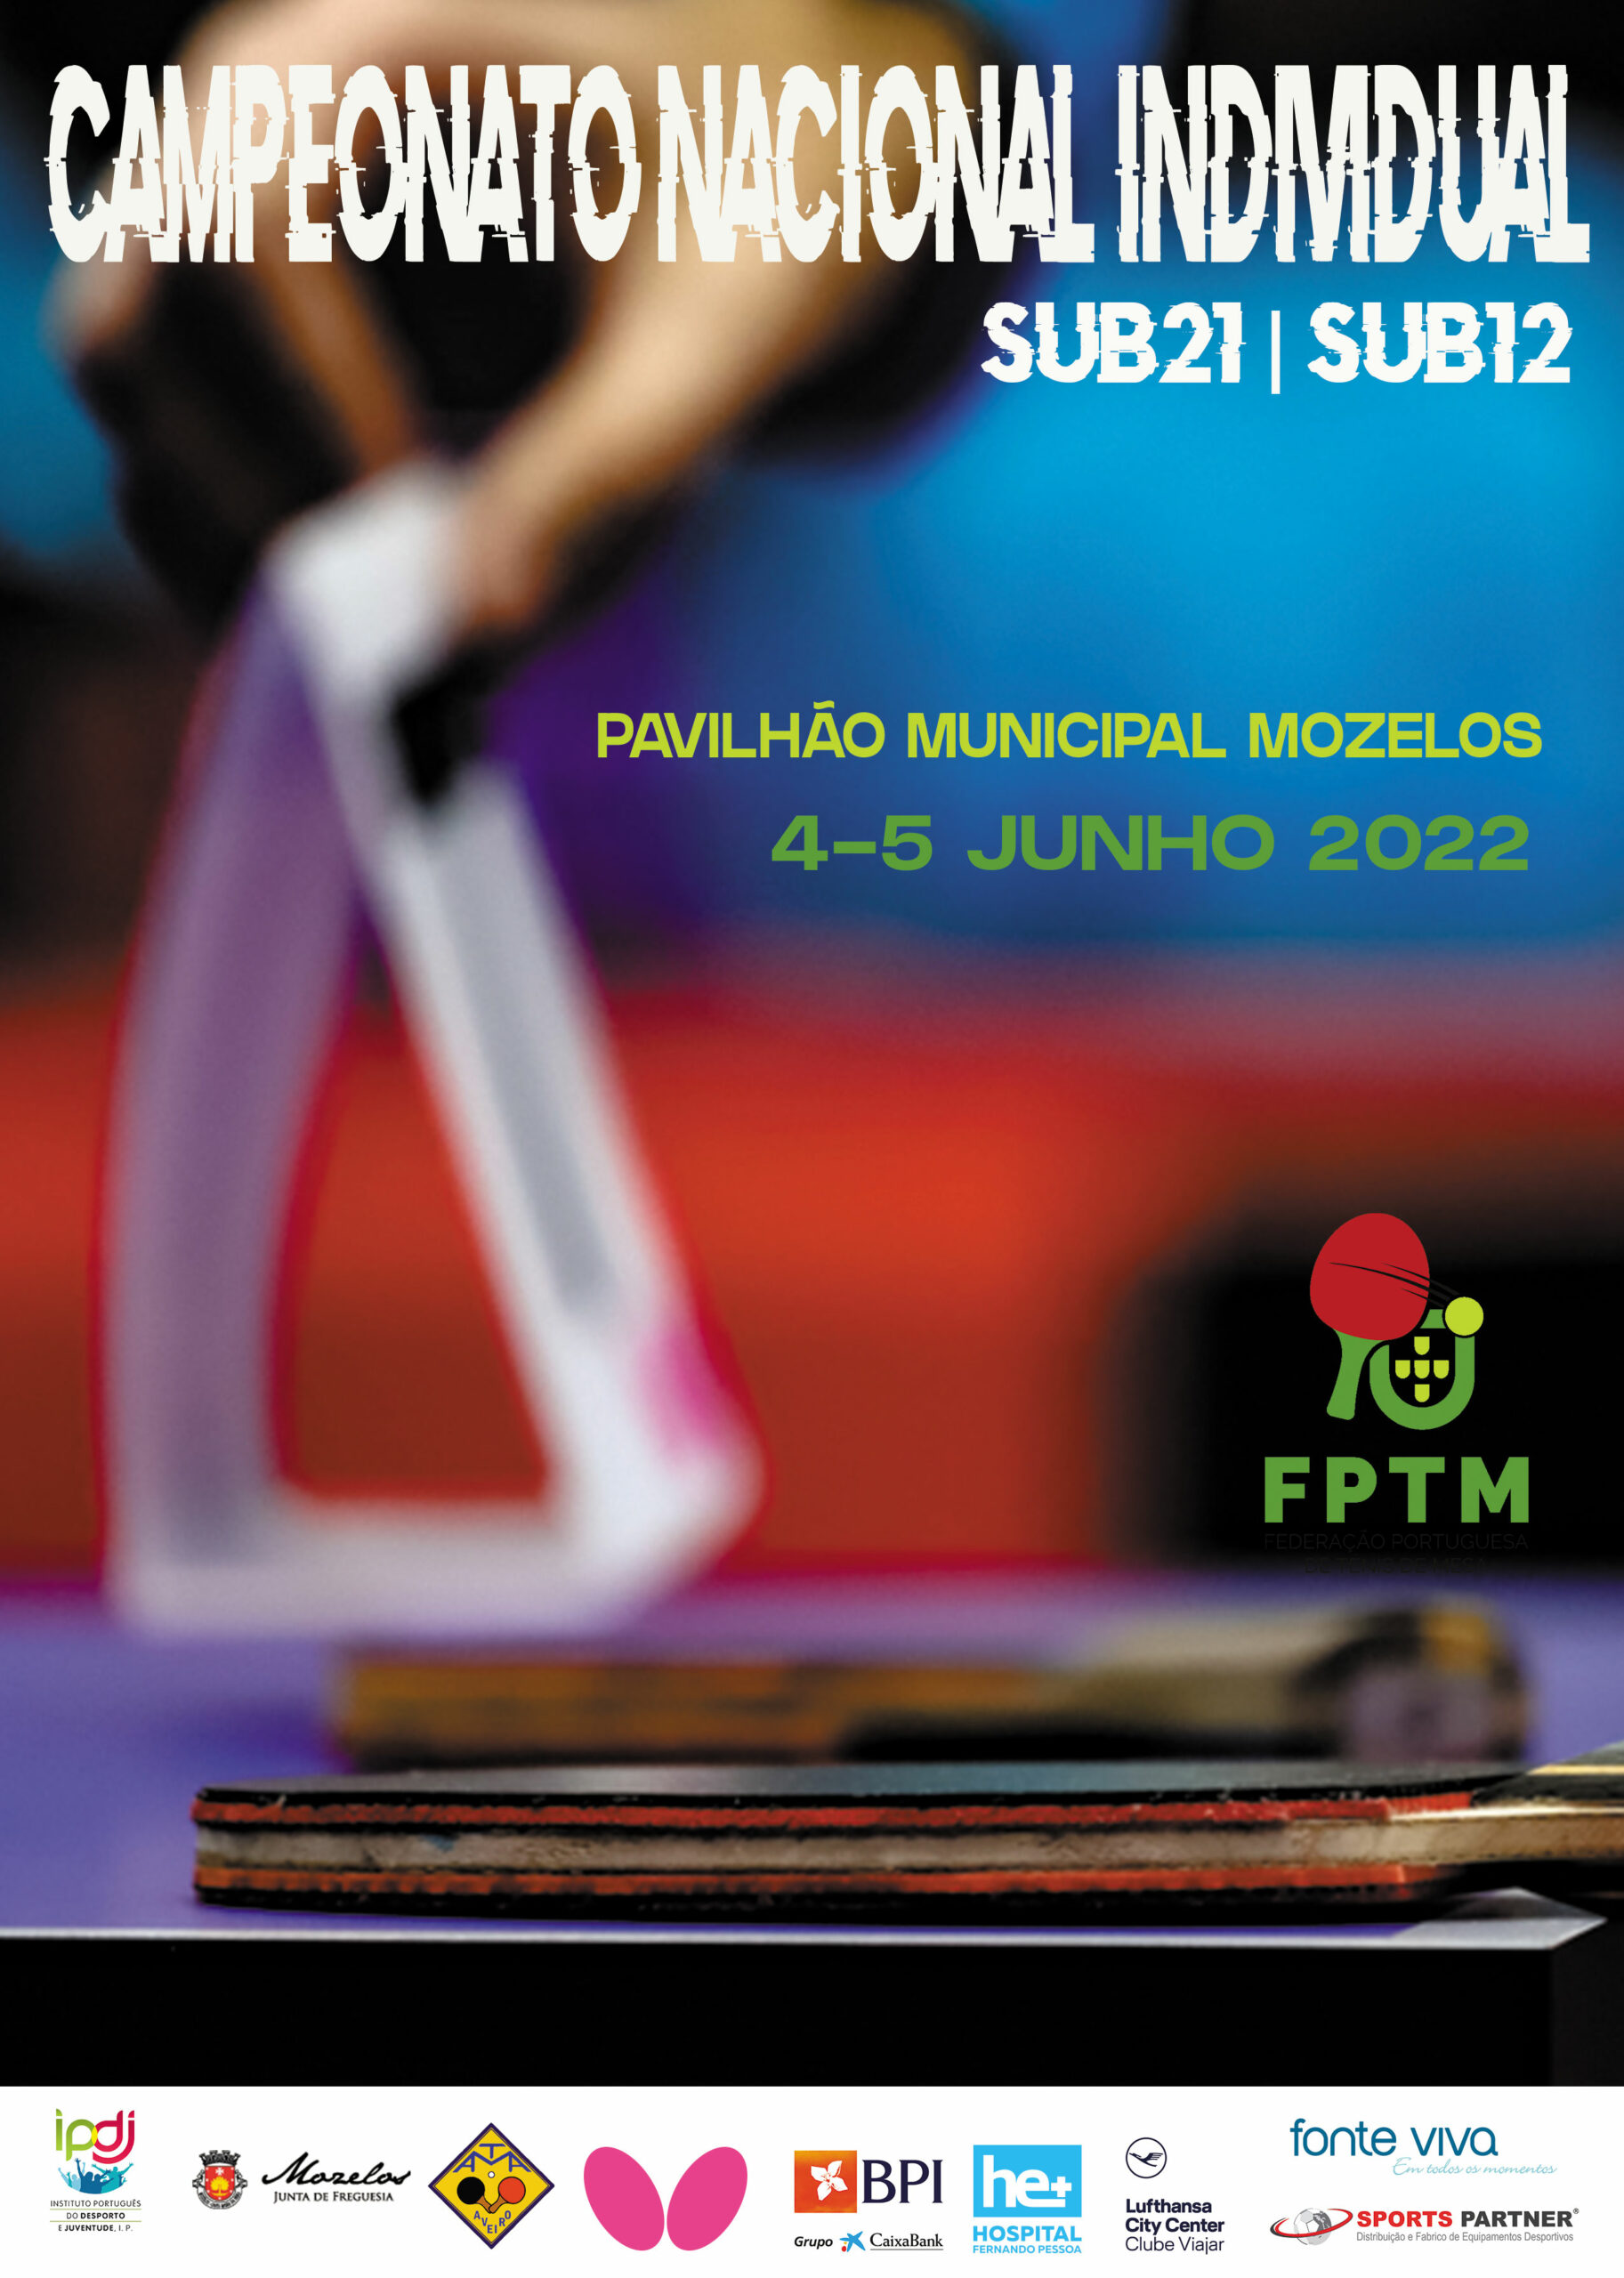 Campeonato Nacional Individual de sub21 e sub12 com 136 atletas